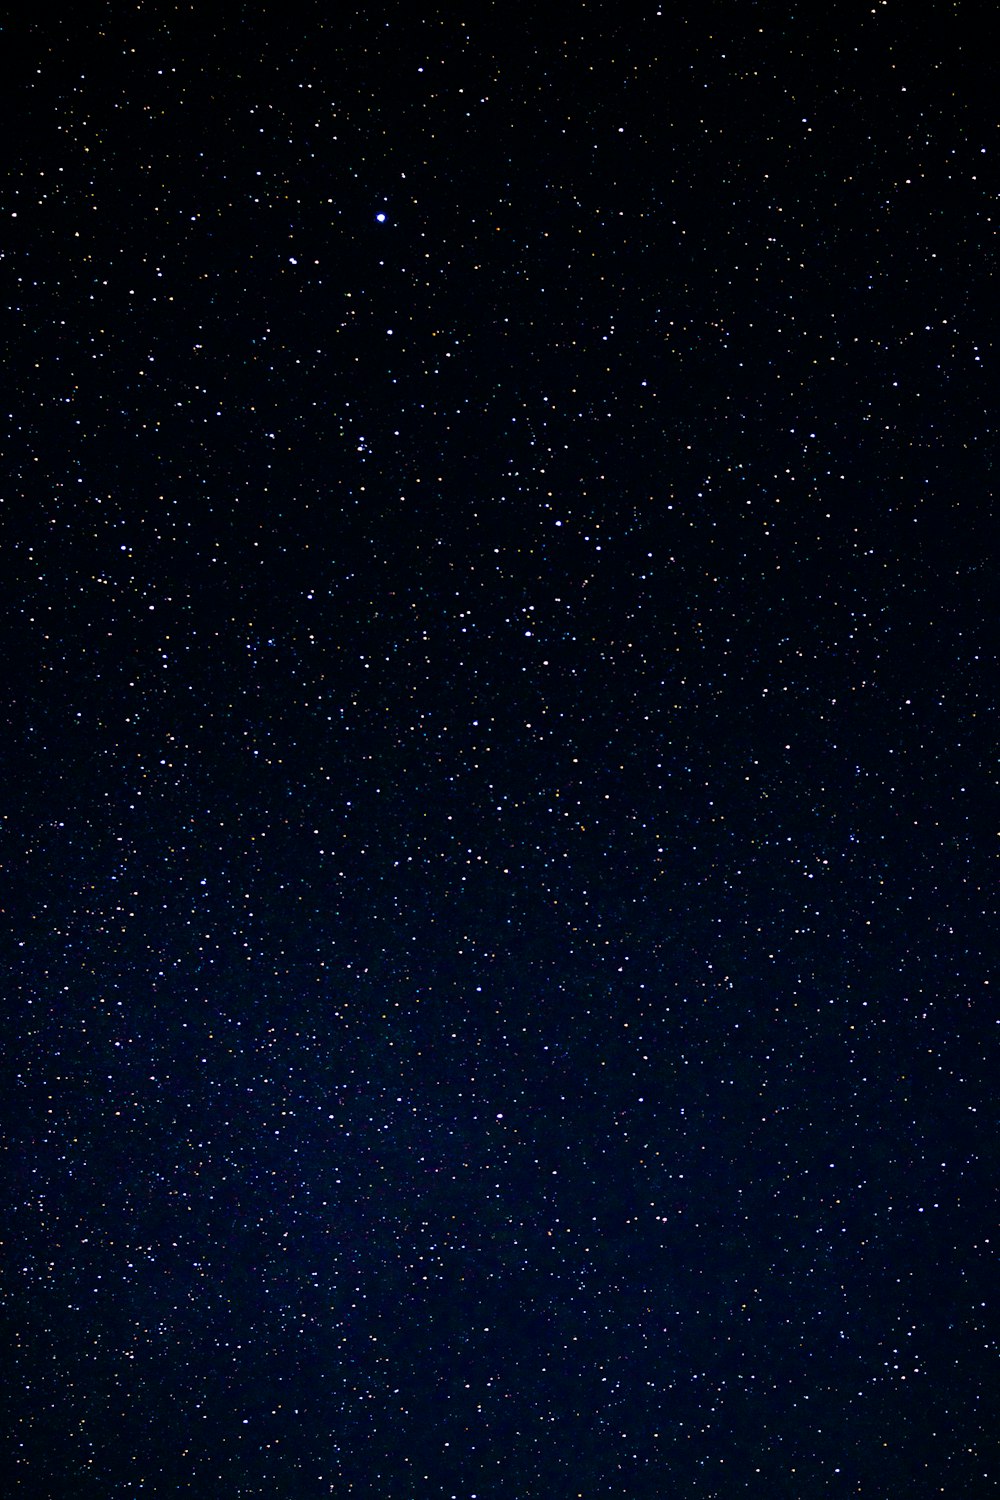 Más de 1000 estrellas en las imágenes del cielo | Descargar imágenes gratis  en Unsplash